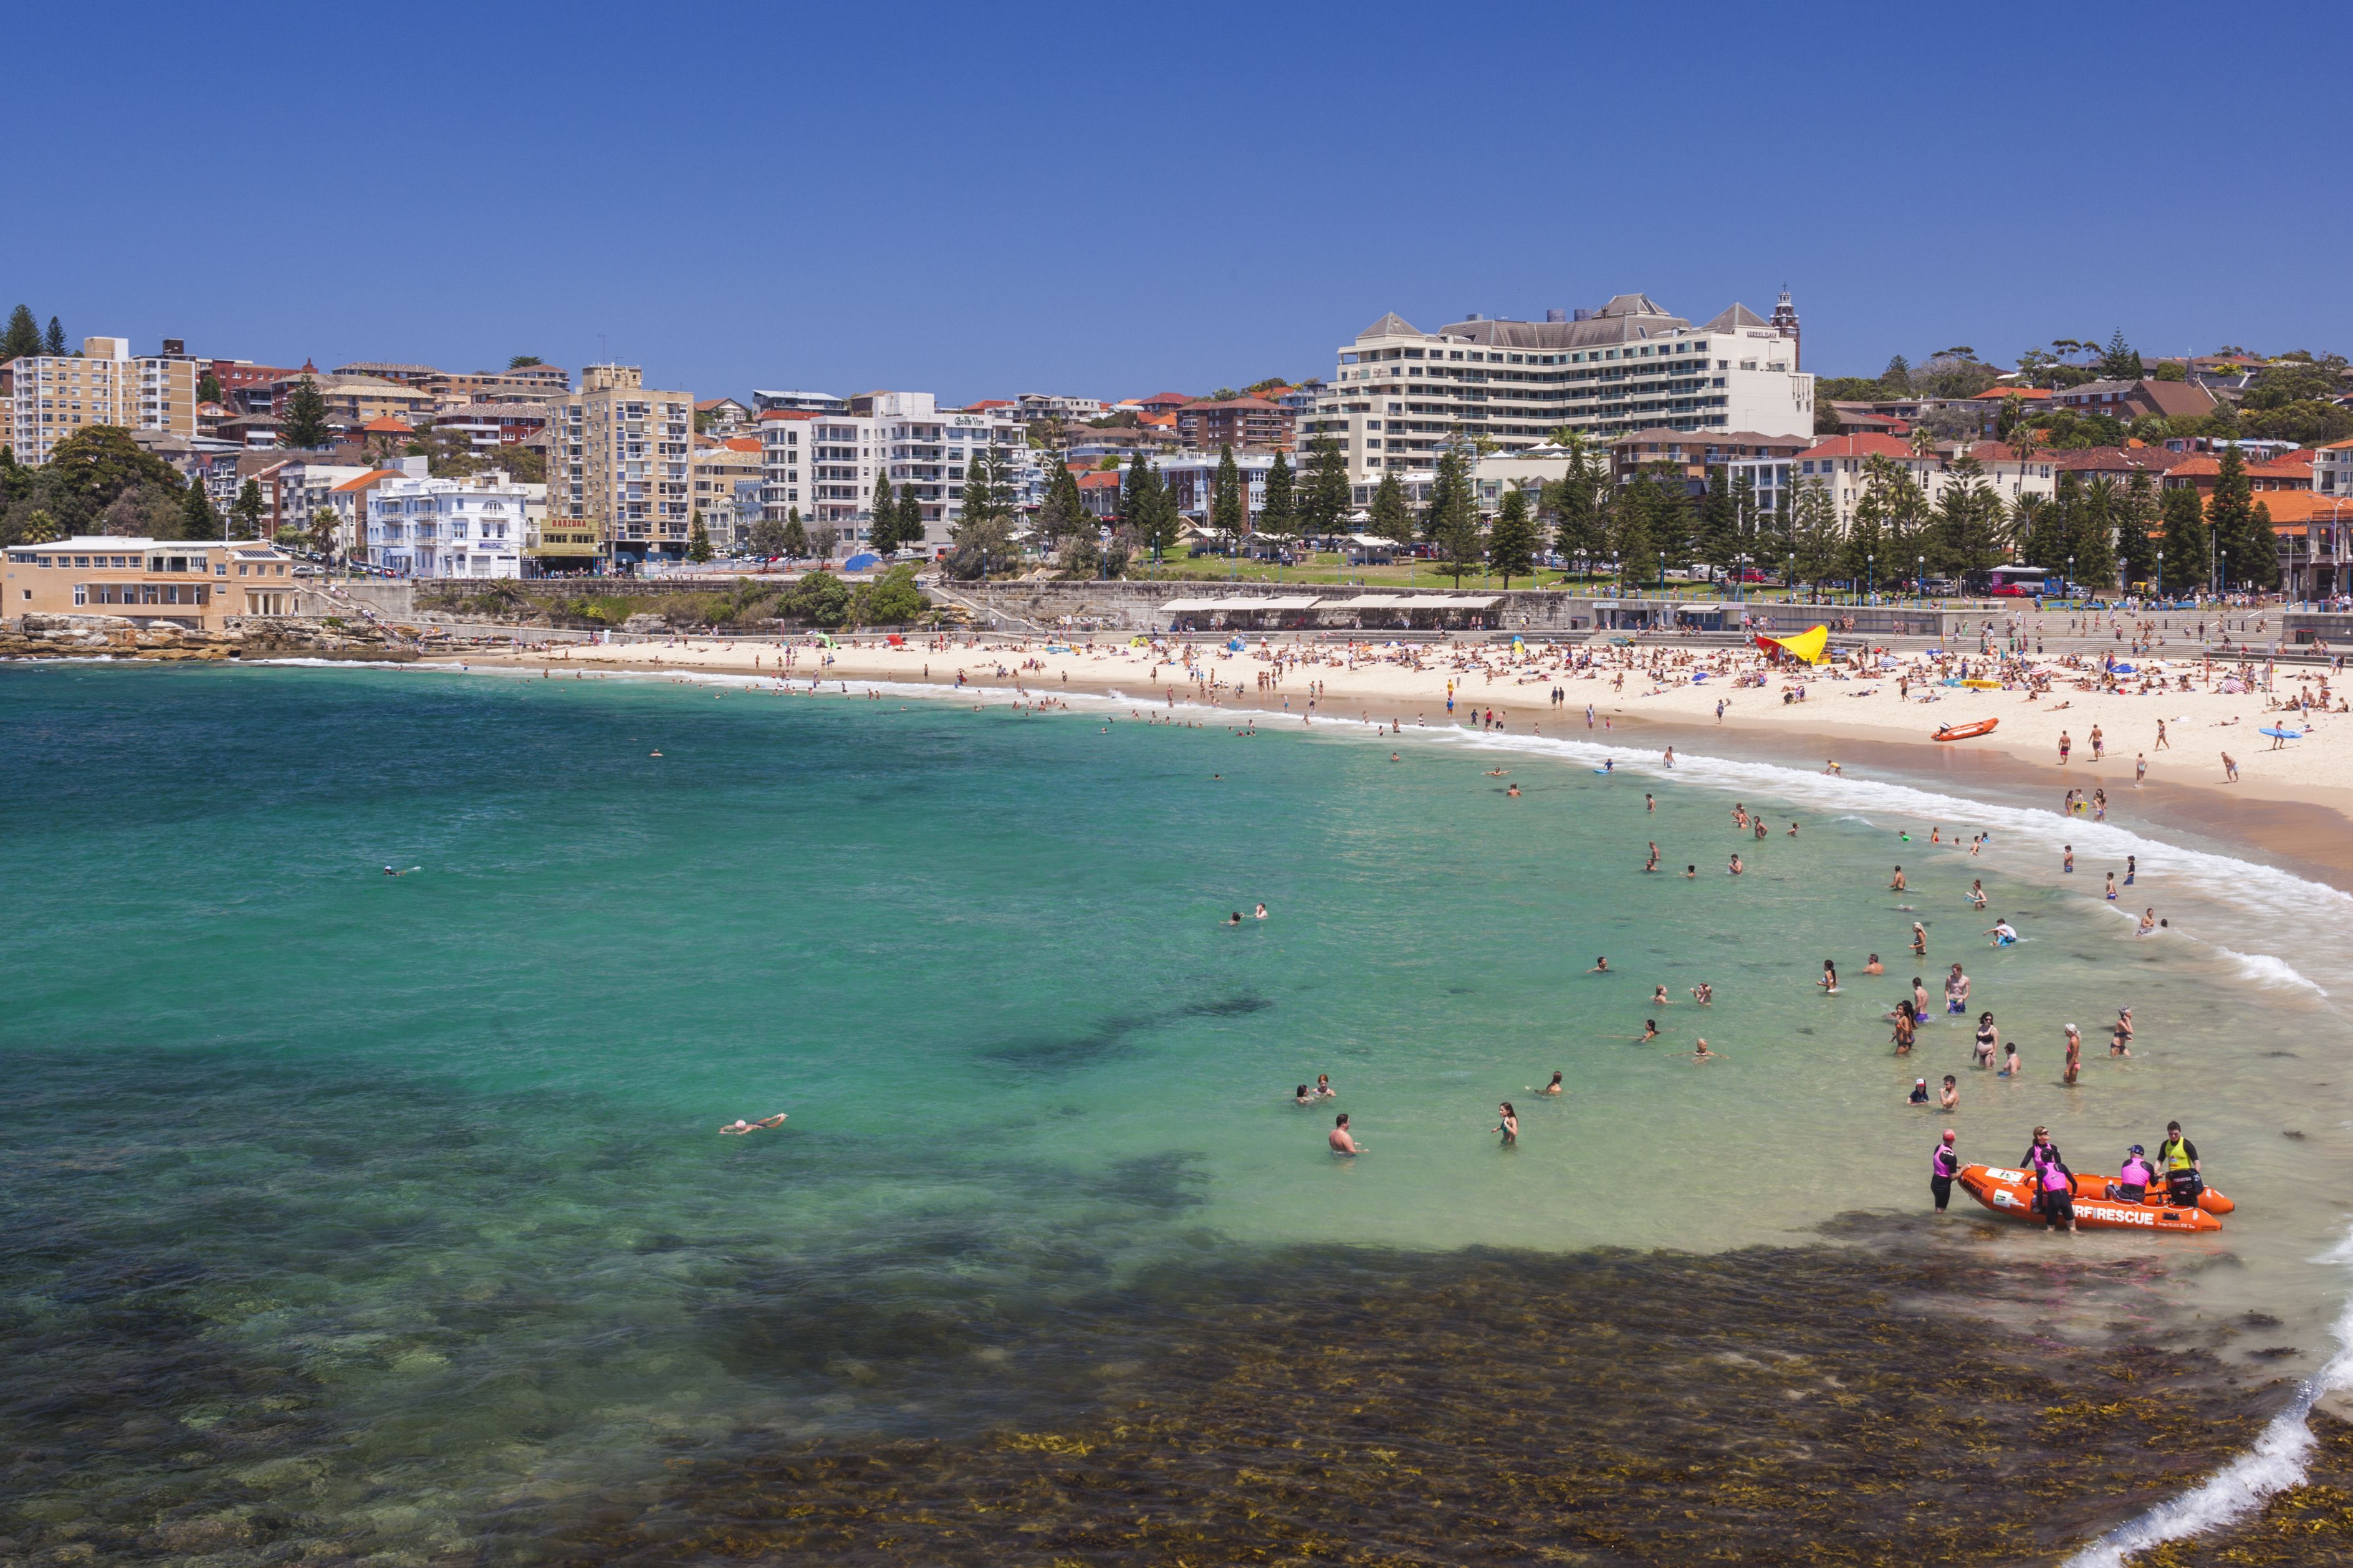 Egy elszabadult karácsonyi buli miatt egész nyárra betiltották a piálást az egyik legnépszerűbb ausztrál strandon